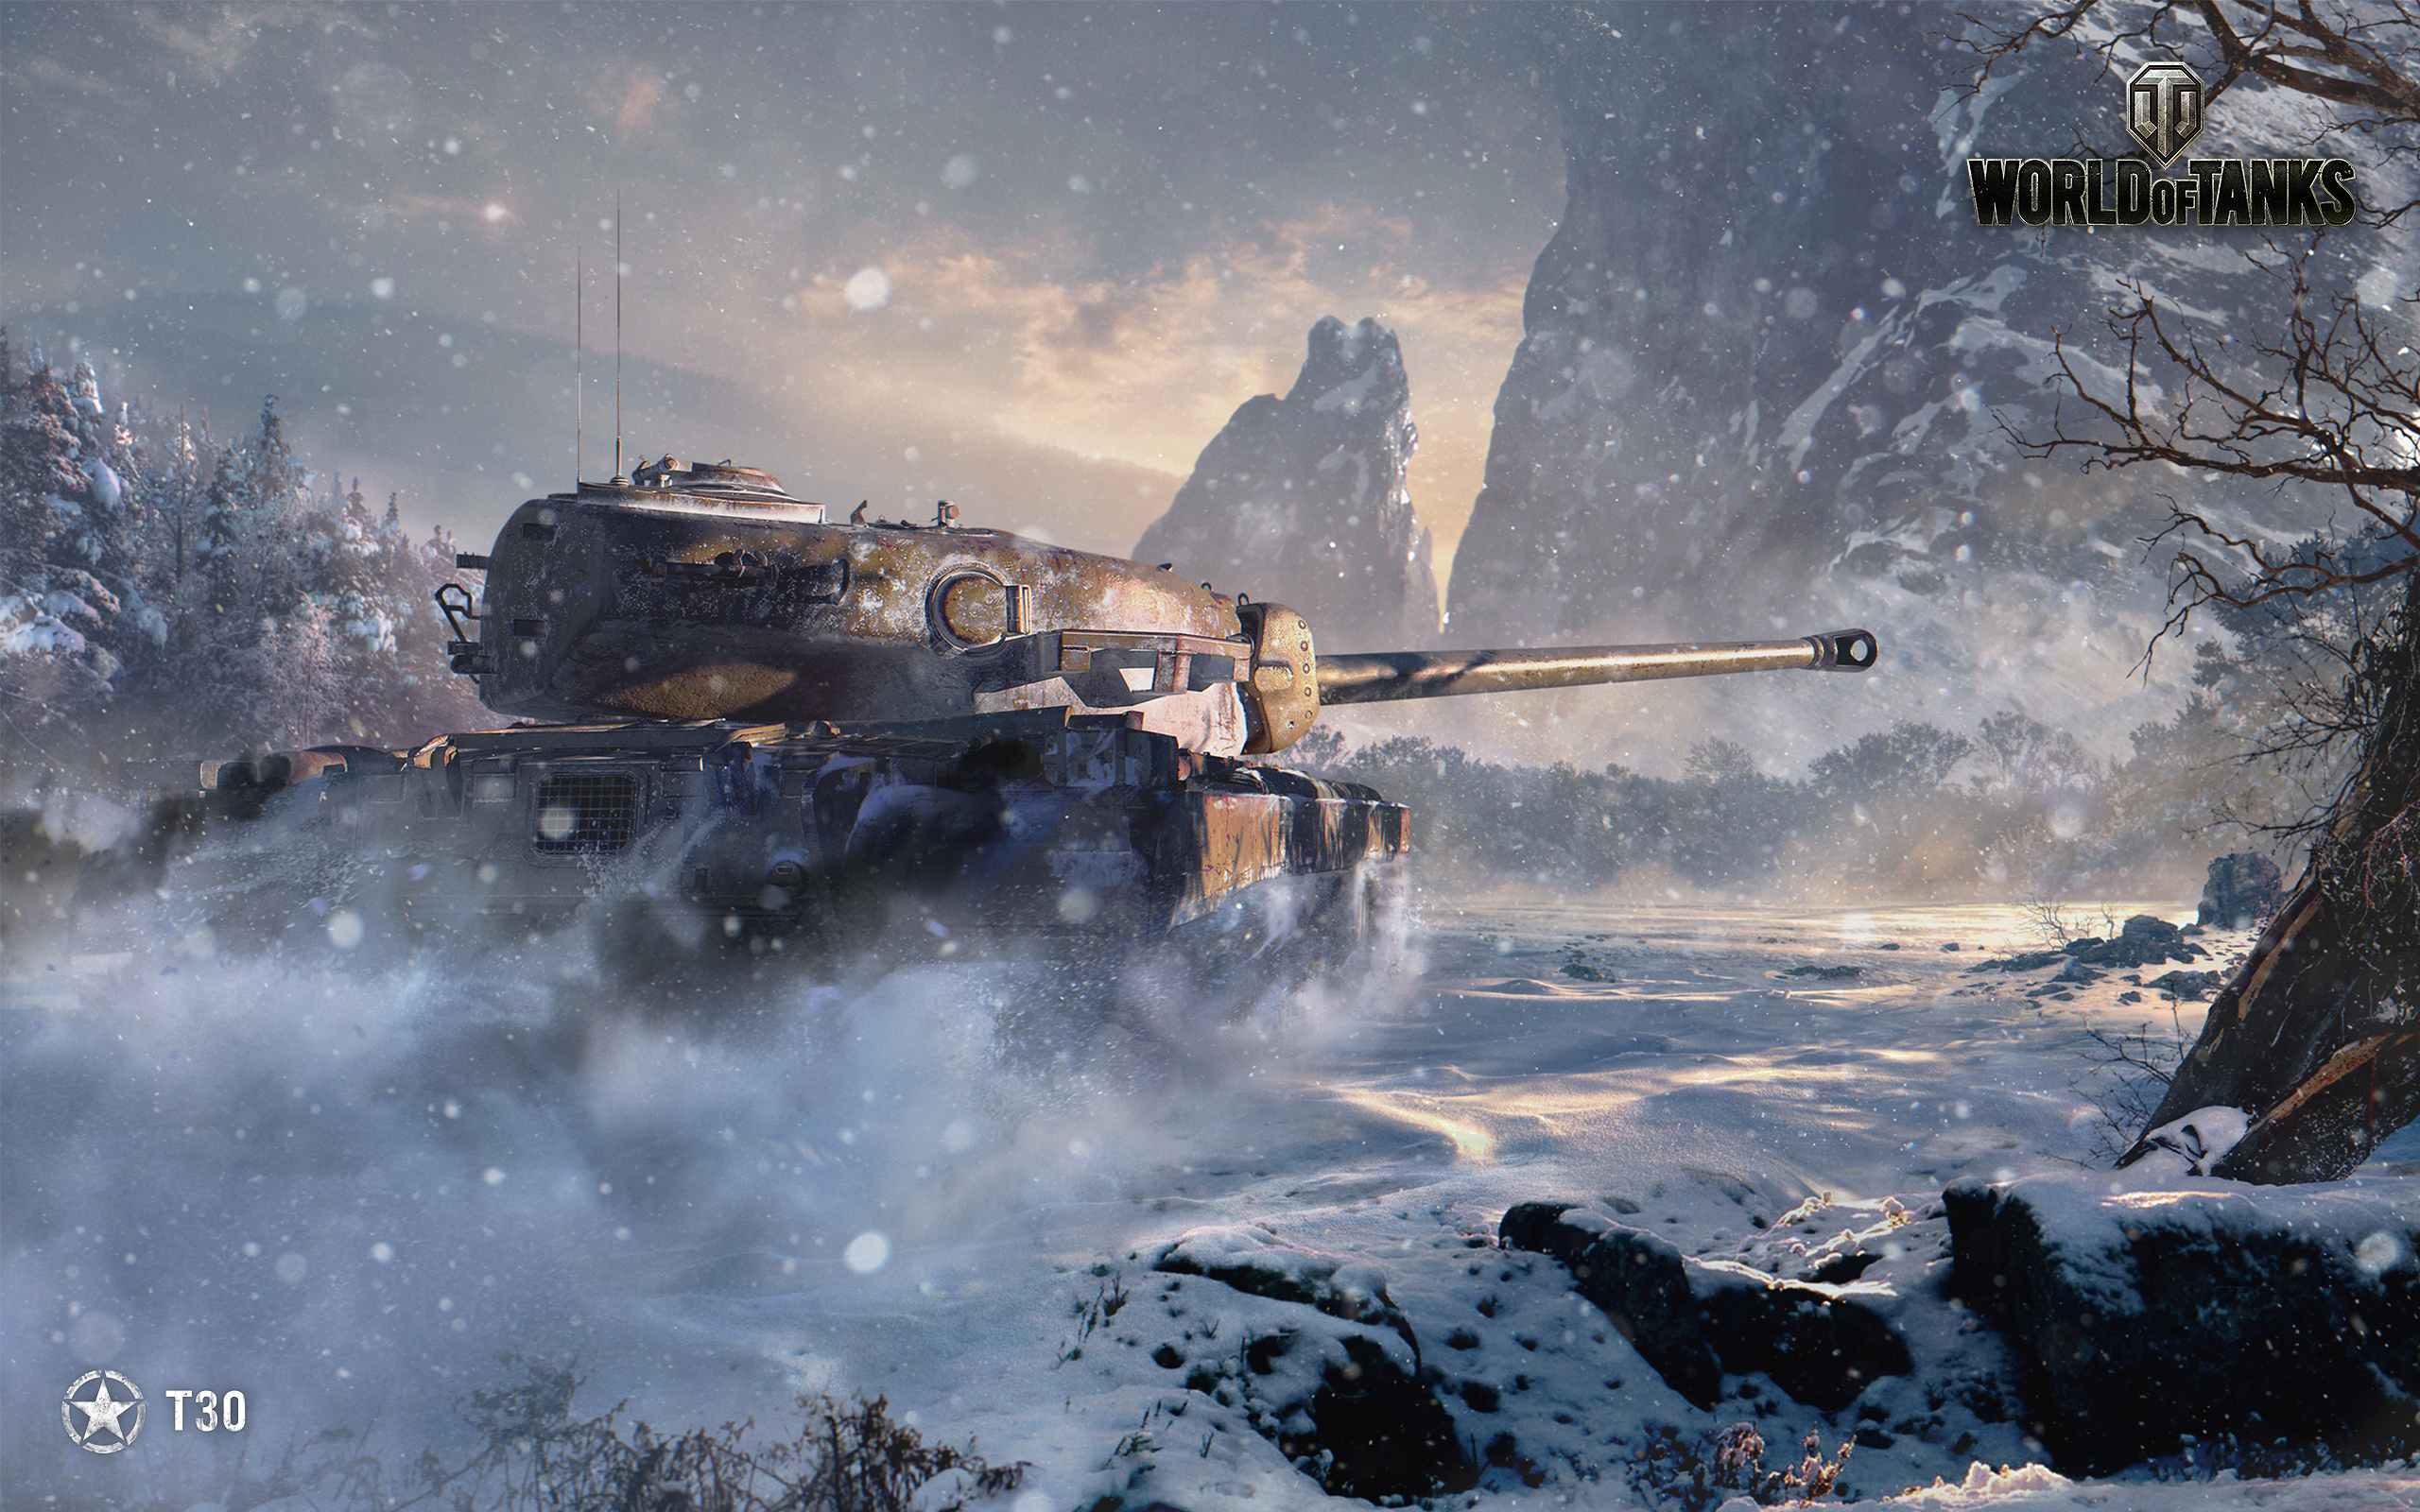 壁紙 2560x1600 ワールドオブタンクス 戦車 T30 雪 ゲーム ダウンロード 写真